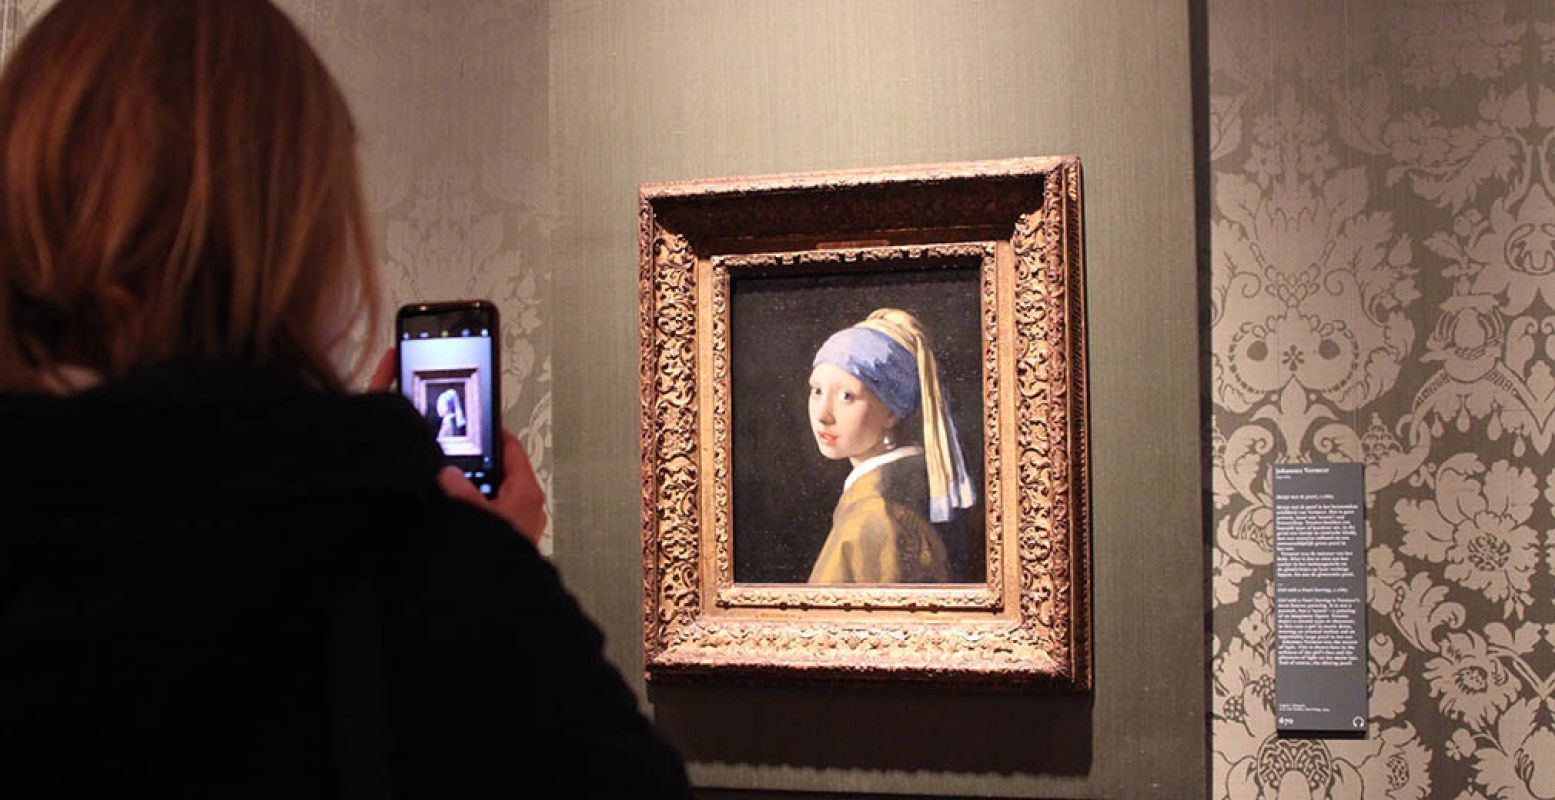 Het beroemdste schilderij in het Mauritshuis: 'Meisje met de parel' van Johannes Vermeer (1665-1667). Foto: DagjeWeg.NL.